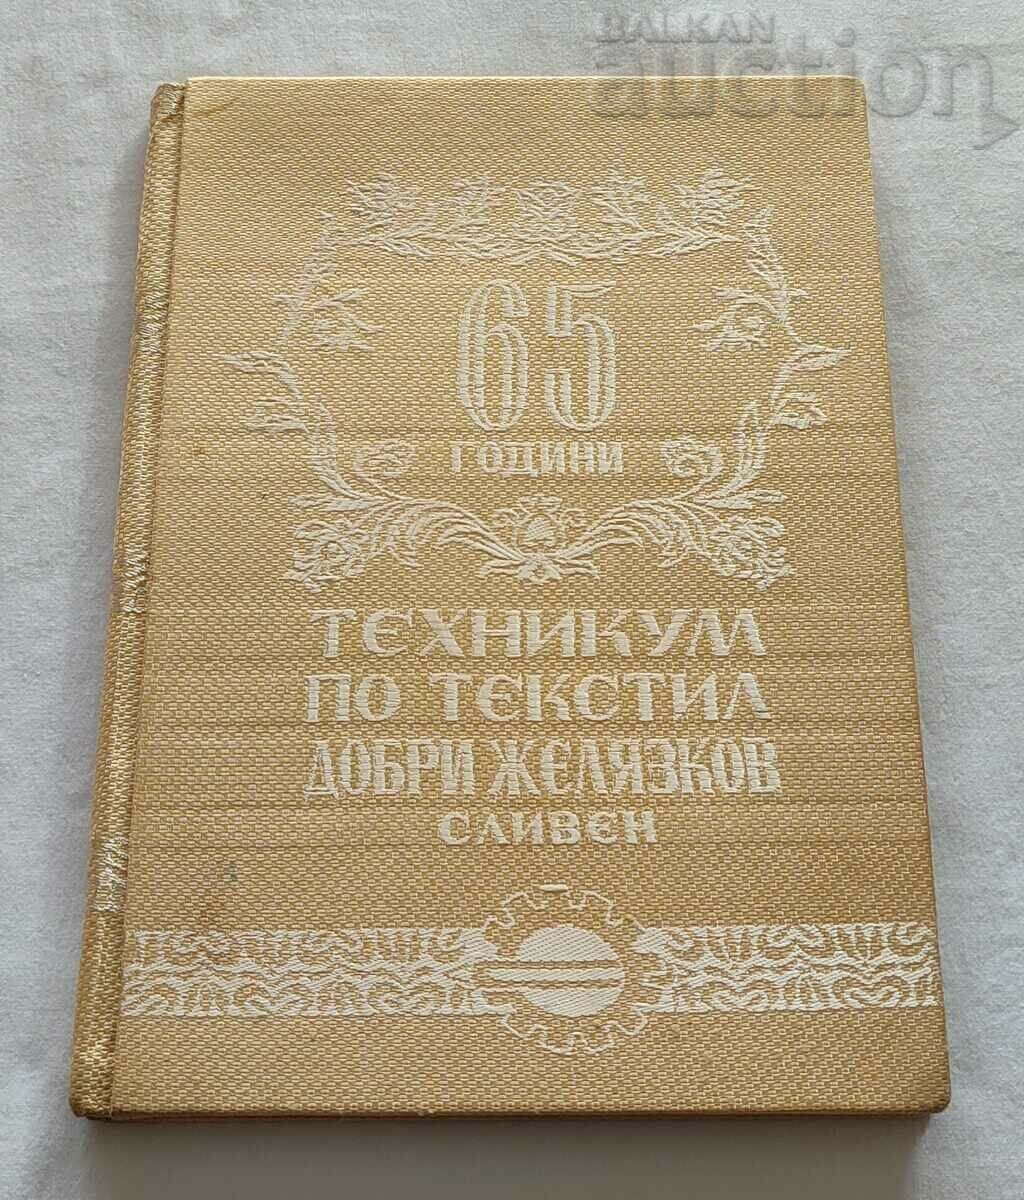 СЛИВЕН ТЕХНИКУМ ПО ТЕКСТИЛ "Д.ЖЕЛЯЗКОВ" 65 г.1958 г.